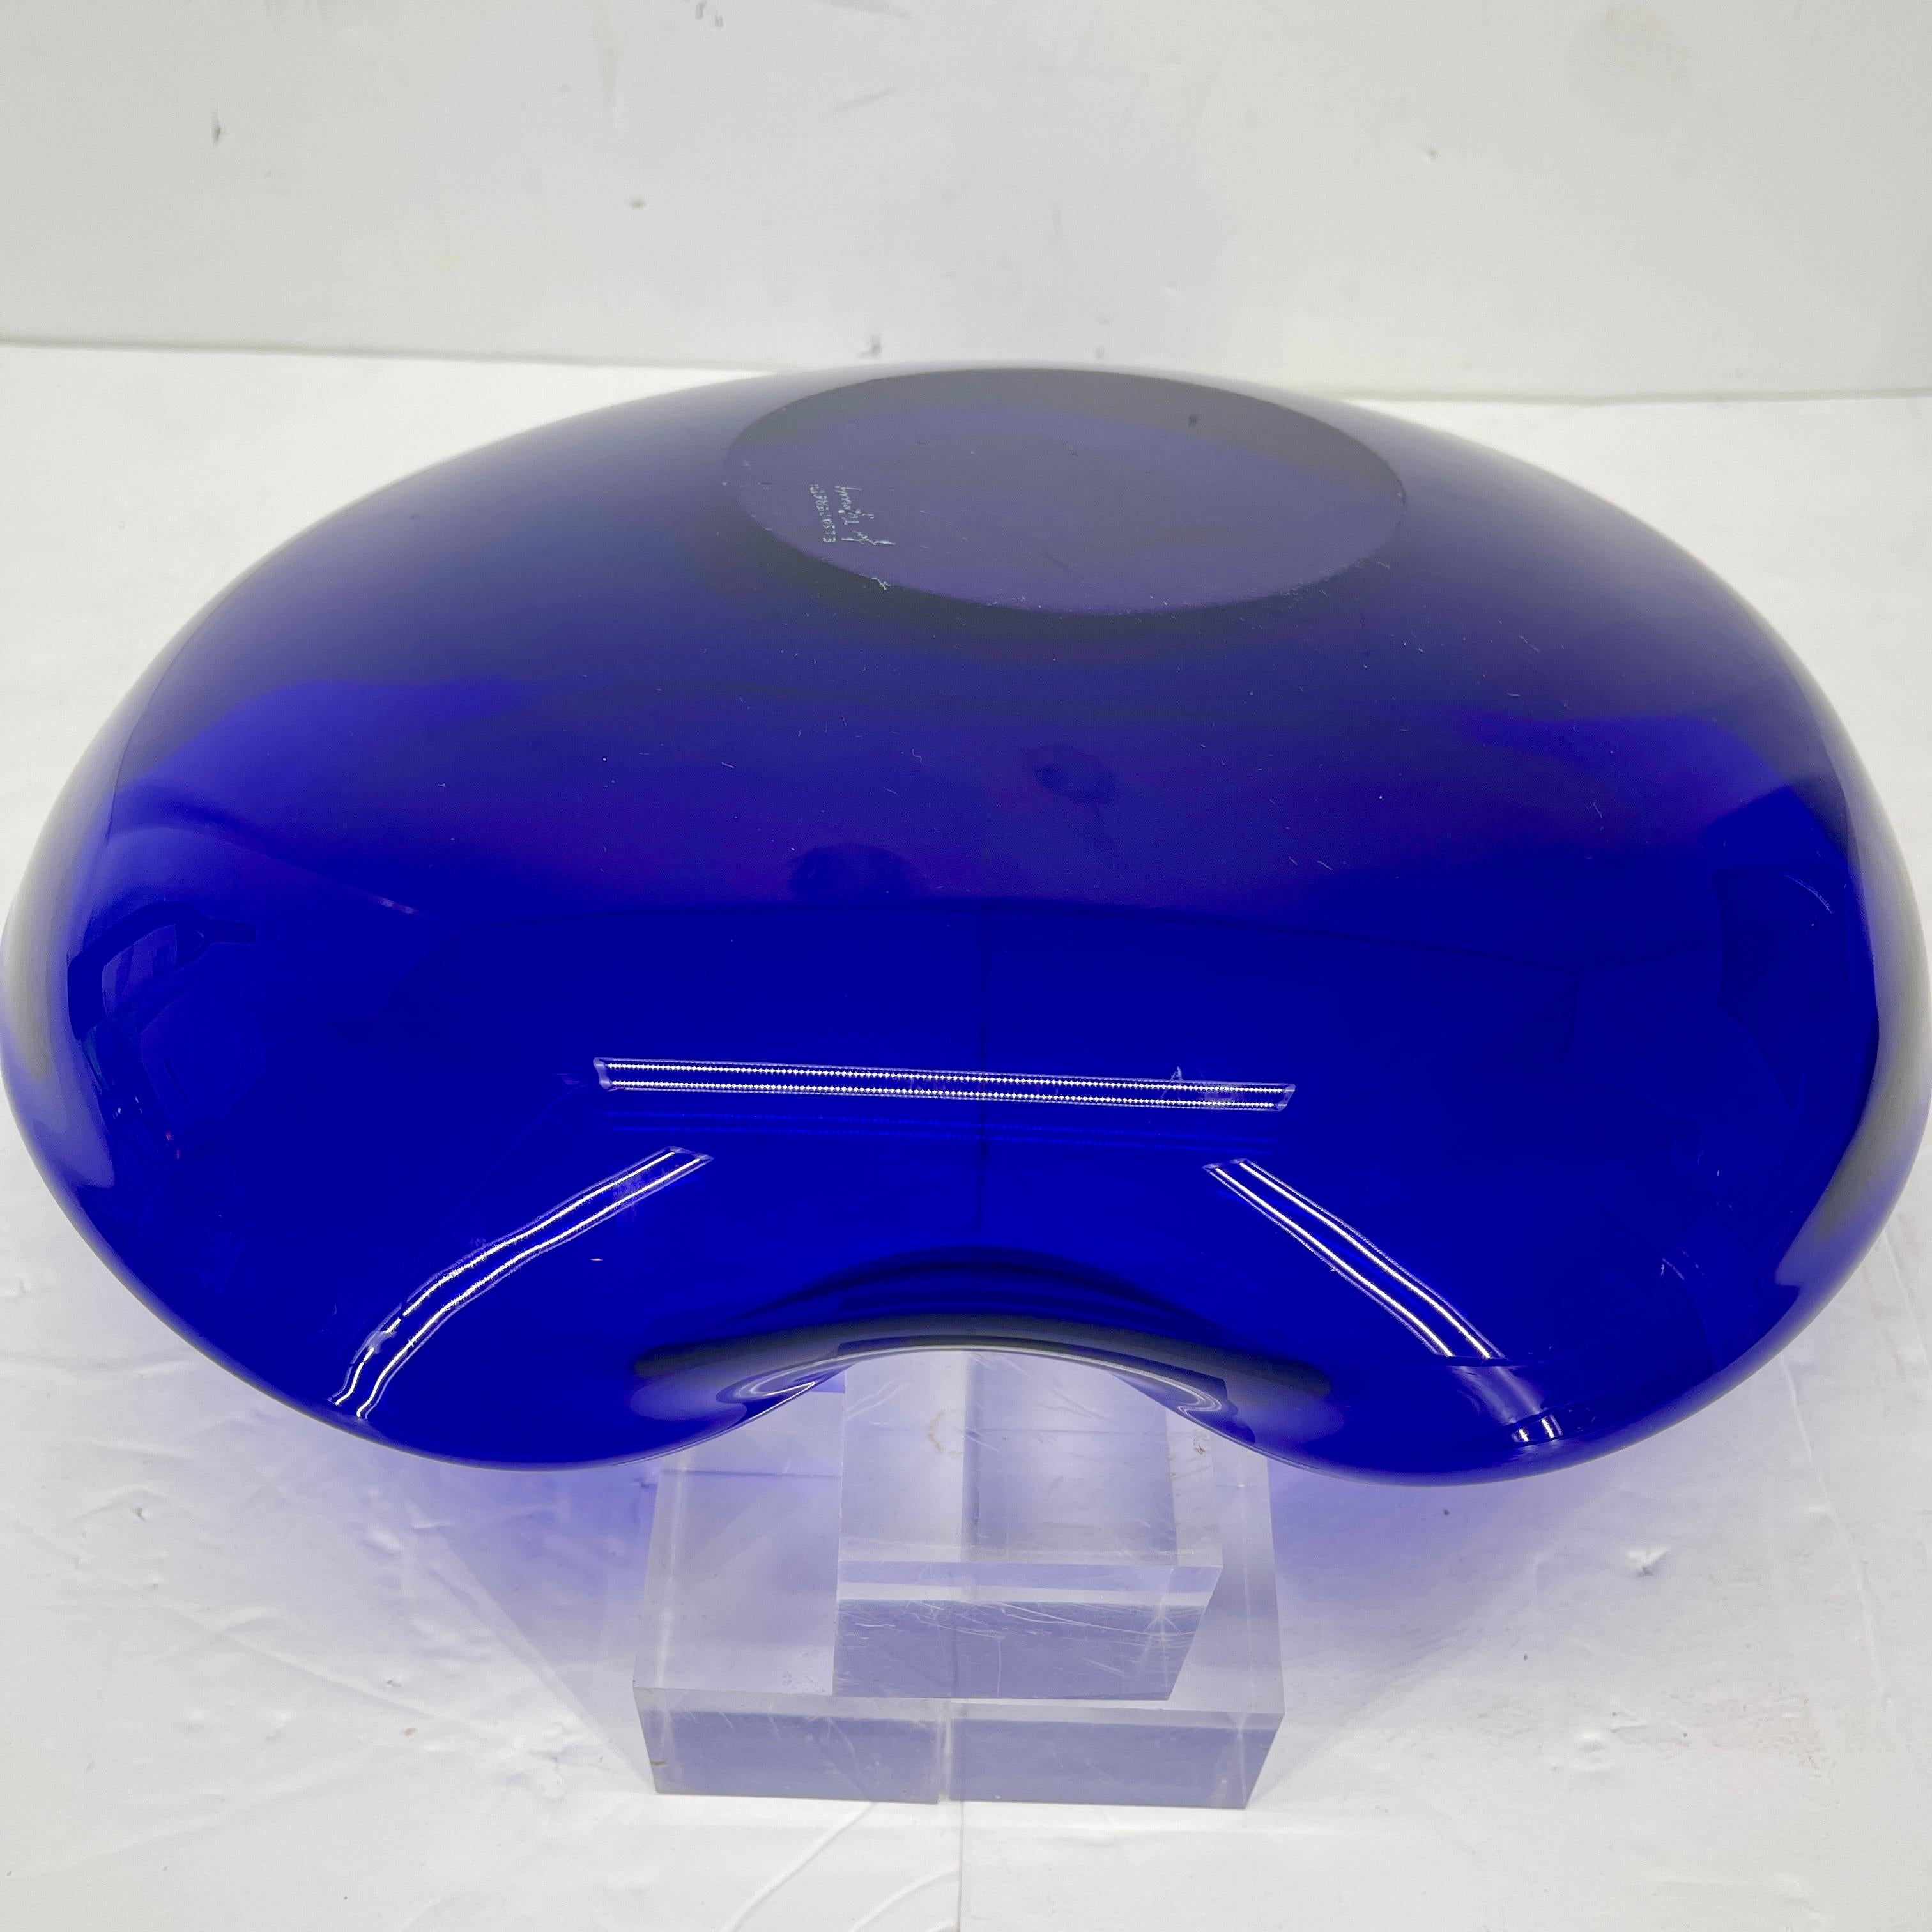 Large Tiffany Elsa Peretti Cobalt Blue Thumbprint Glass Bowl For Sale 1